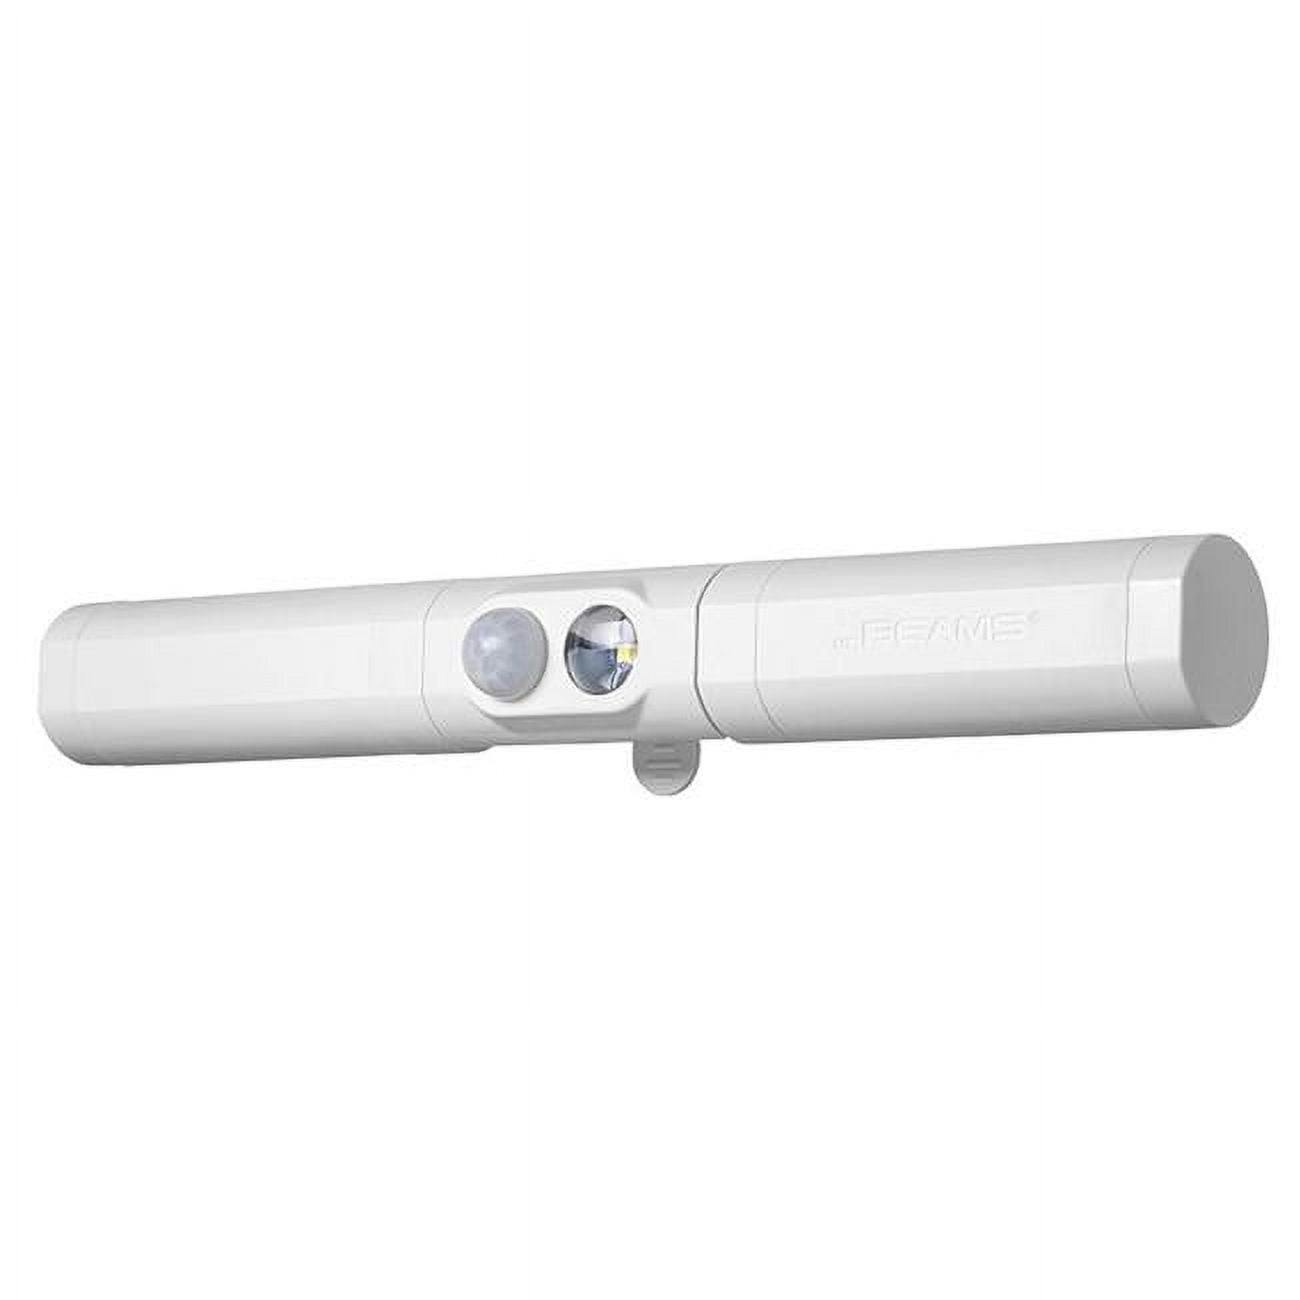 Slimline White Motion-Sensing LED Security Spot Light, Battery-Powered